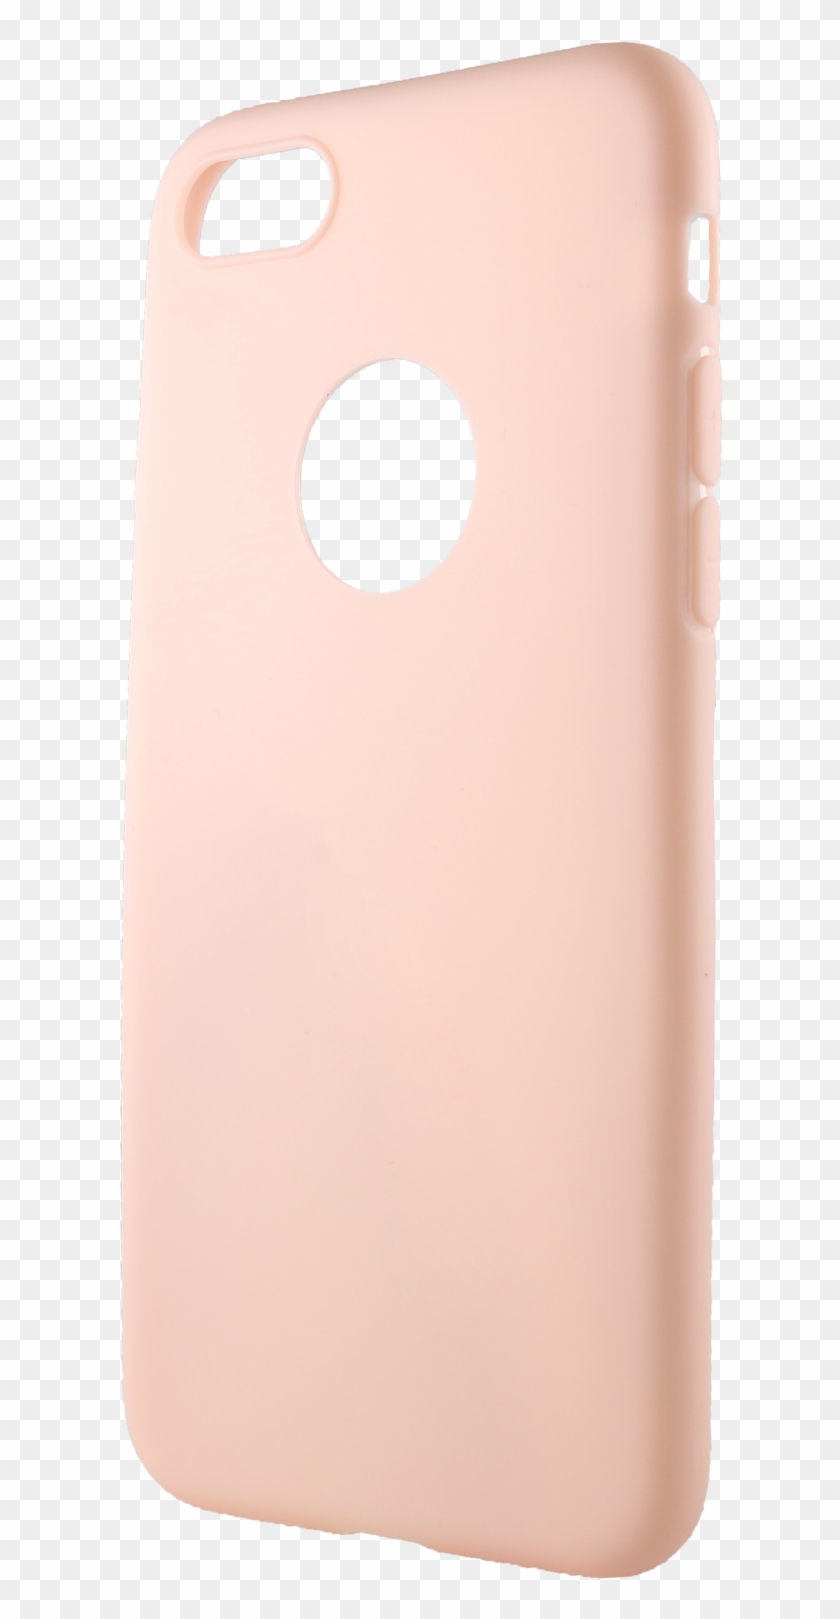 Alzacz, Xiaomi, Xiaomi Mi A1, Pink, Mobile Phone Accessories - Smartphone Clipart #2970981